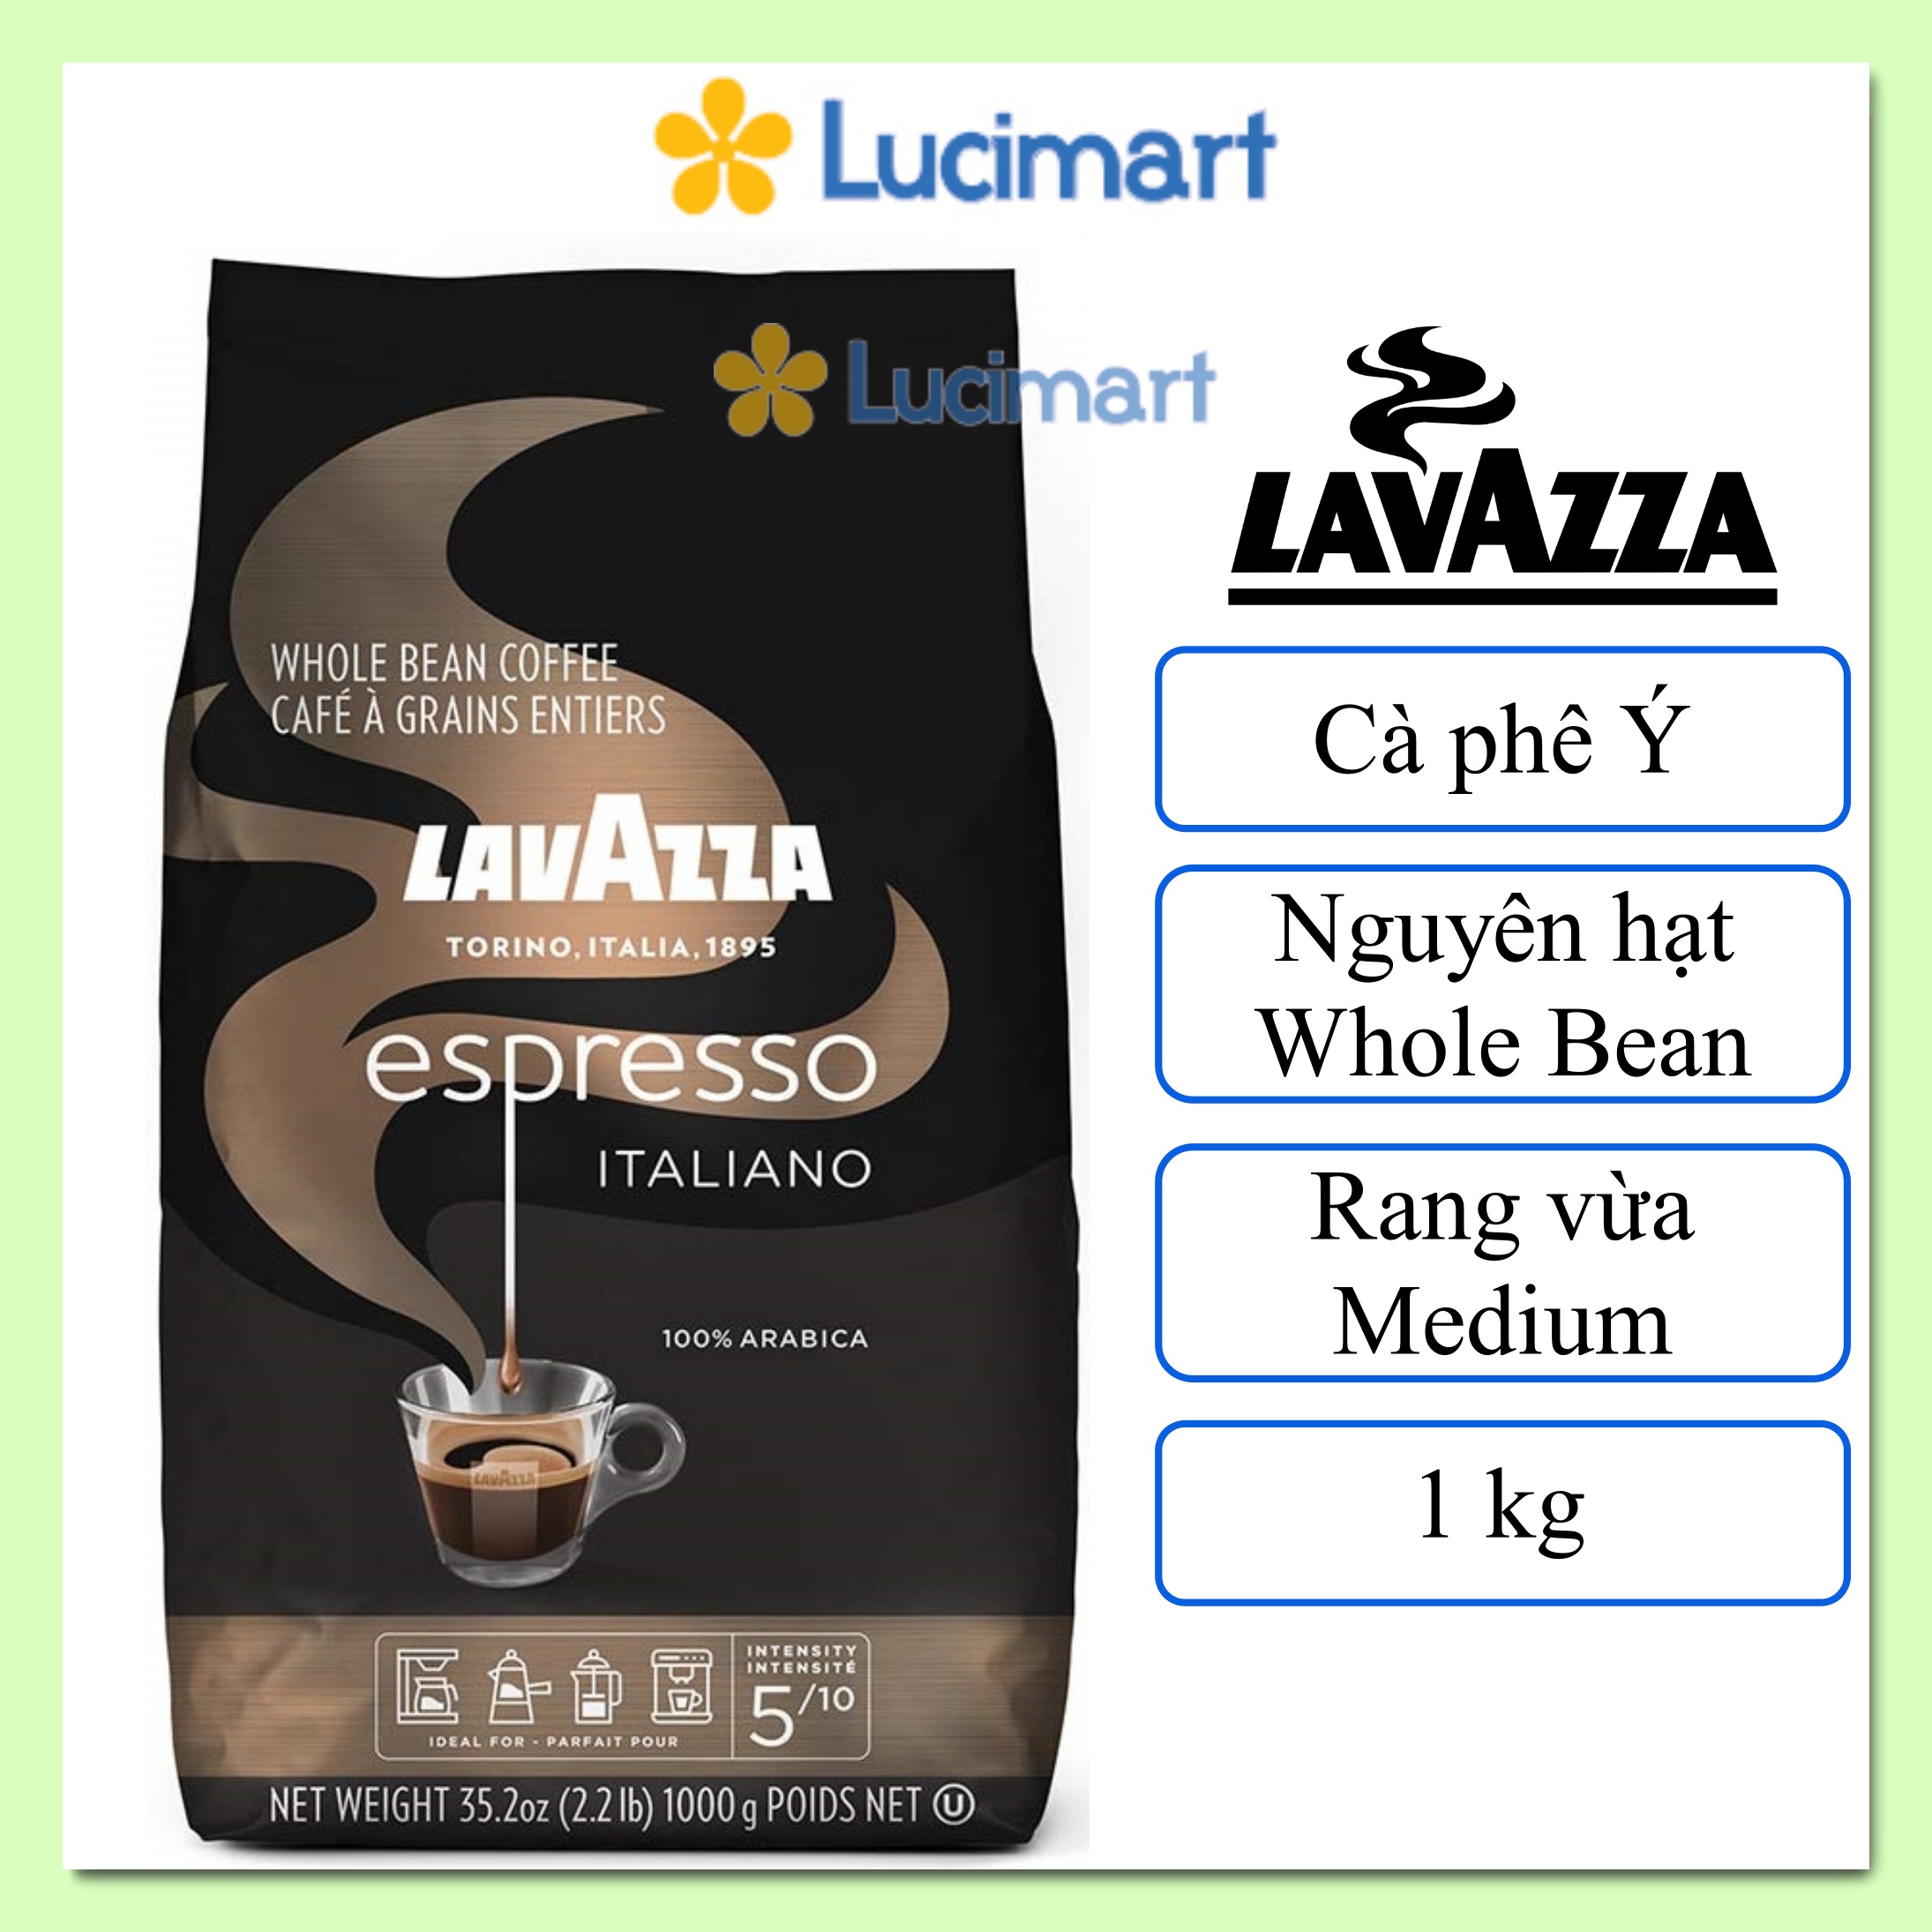 Cà phê Ý Lavazza Espresso Italiano nguyên hạt Whole Bean gói 1kg Hàng Mỹ